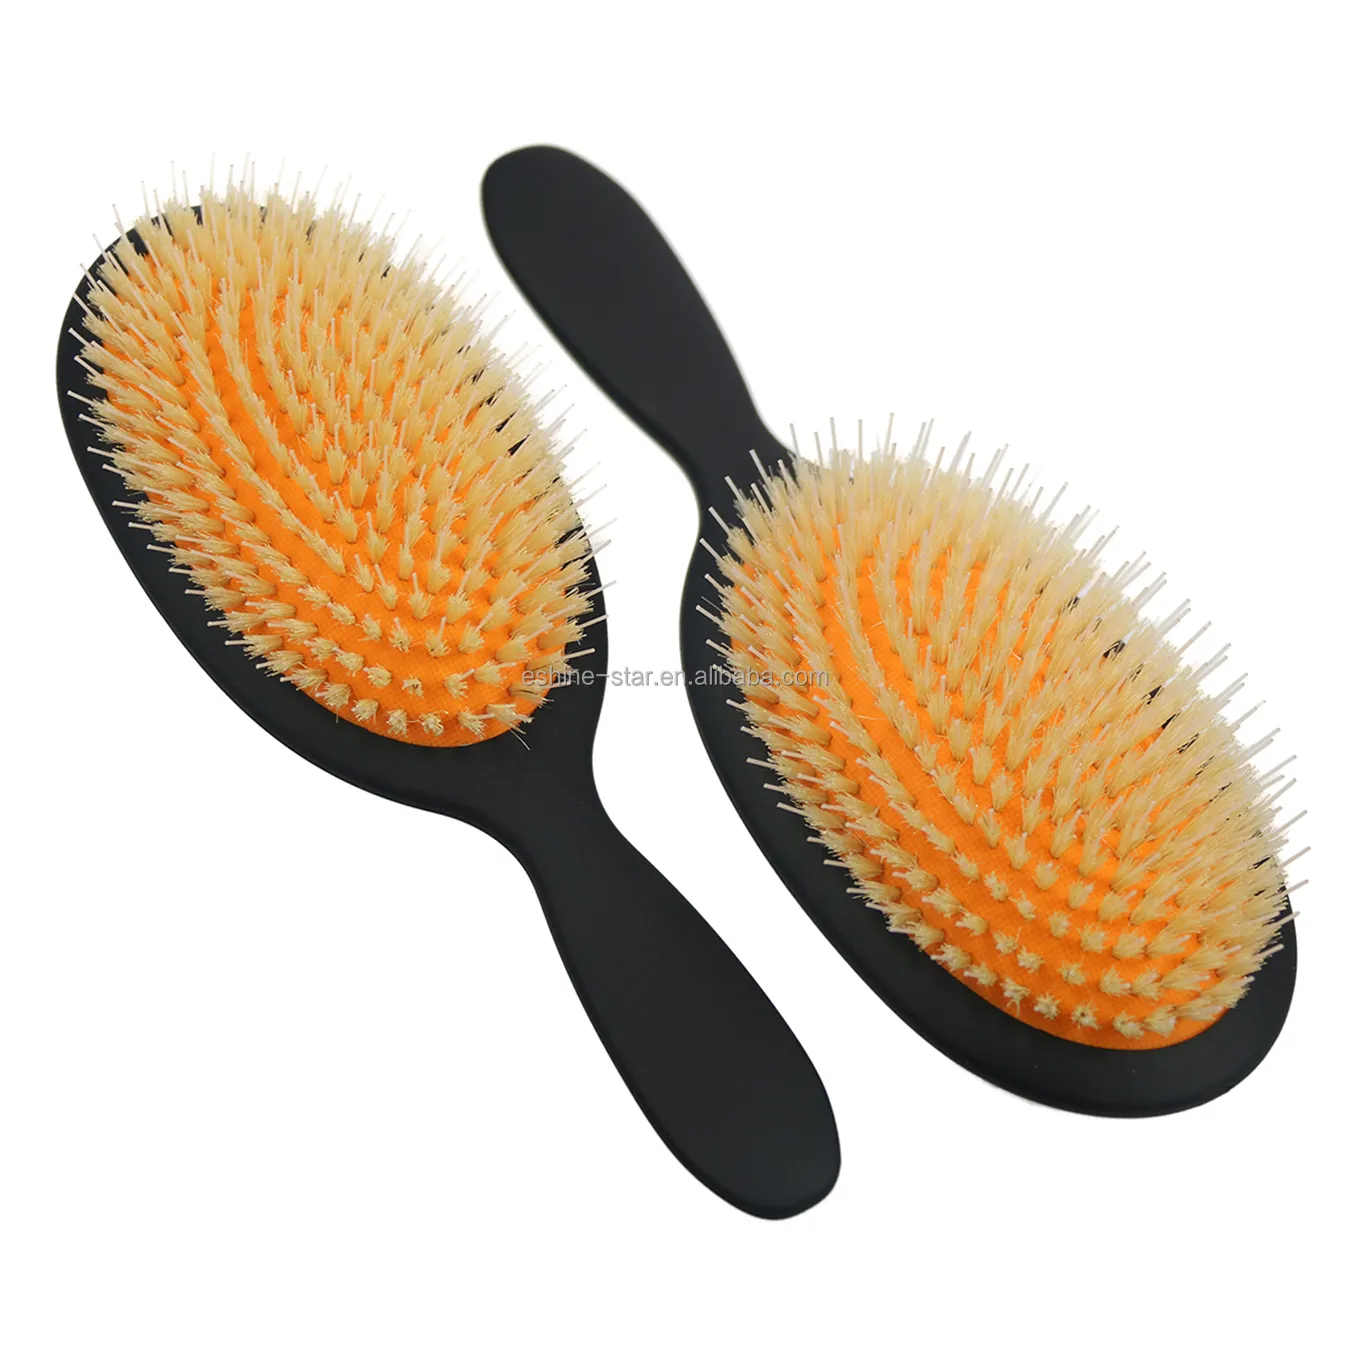 Produttore di spazzole per capelli spazzola per Paddle con cuscino d'aria in gomma ovale nera spazzola per estensione dei capelli con setole di cinghiale bianco per capelli parrucca